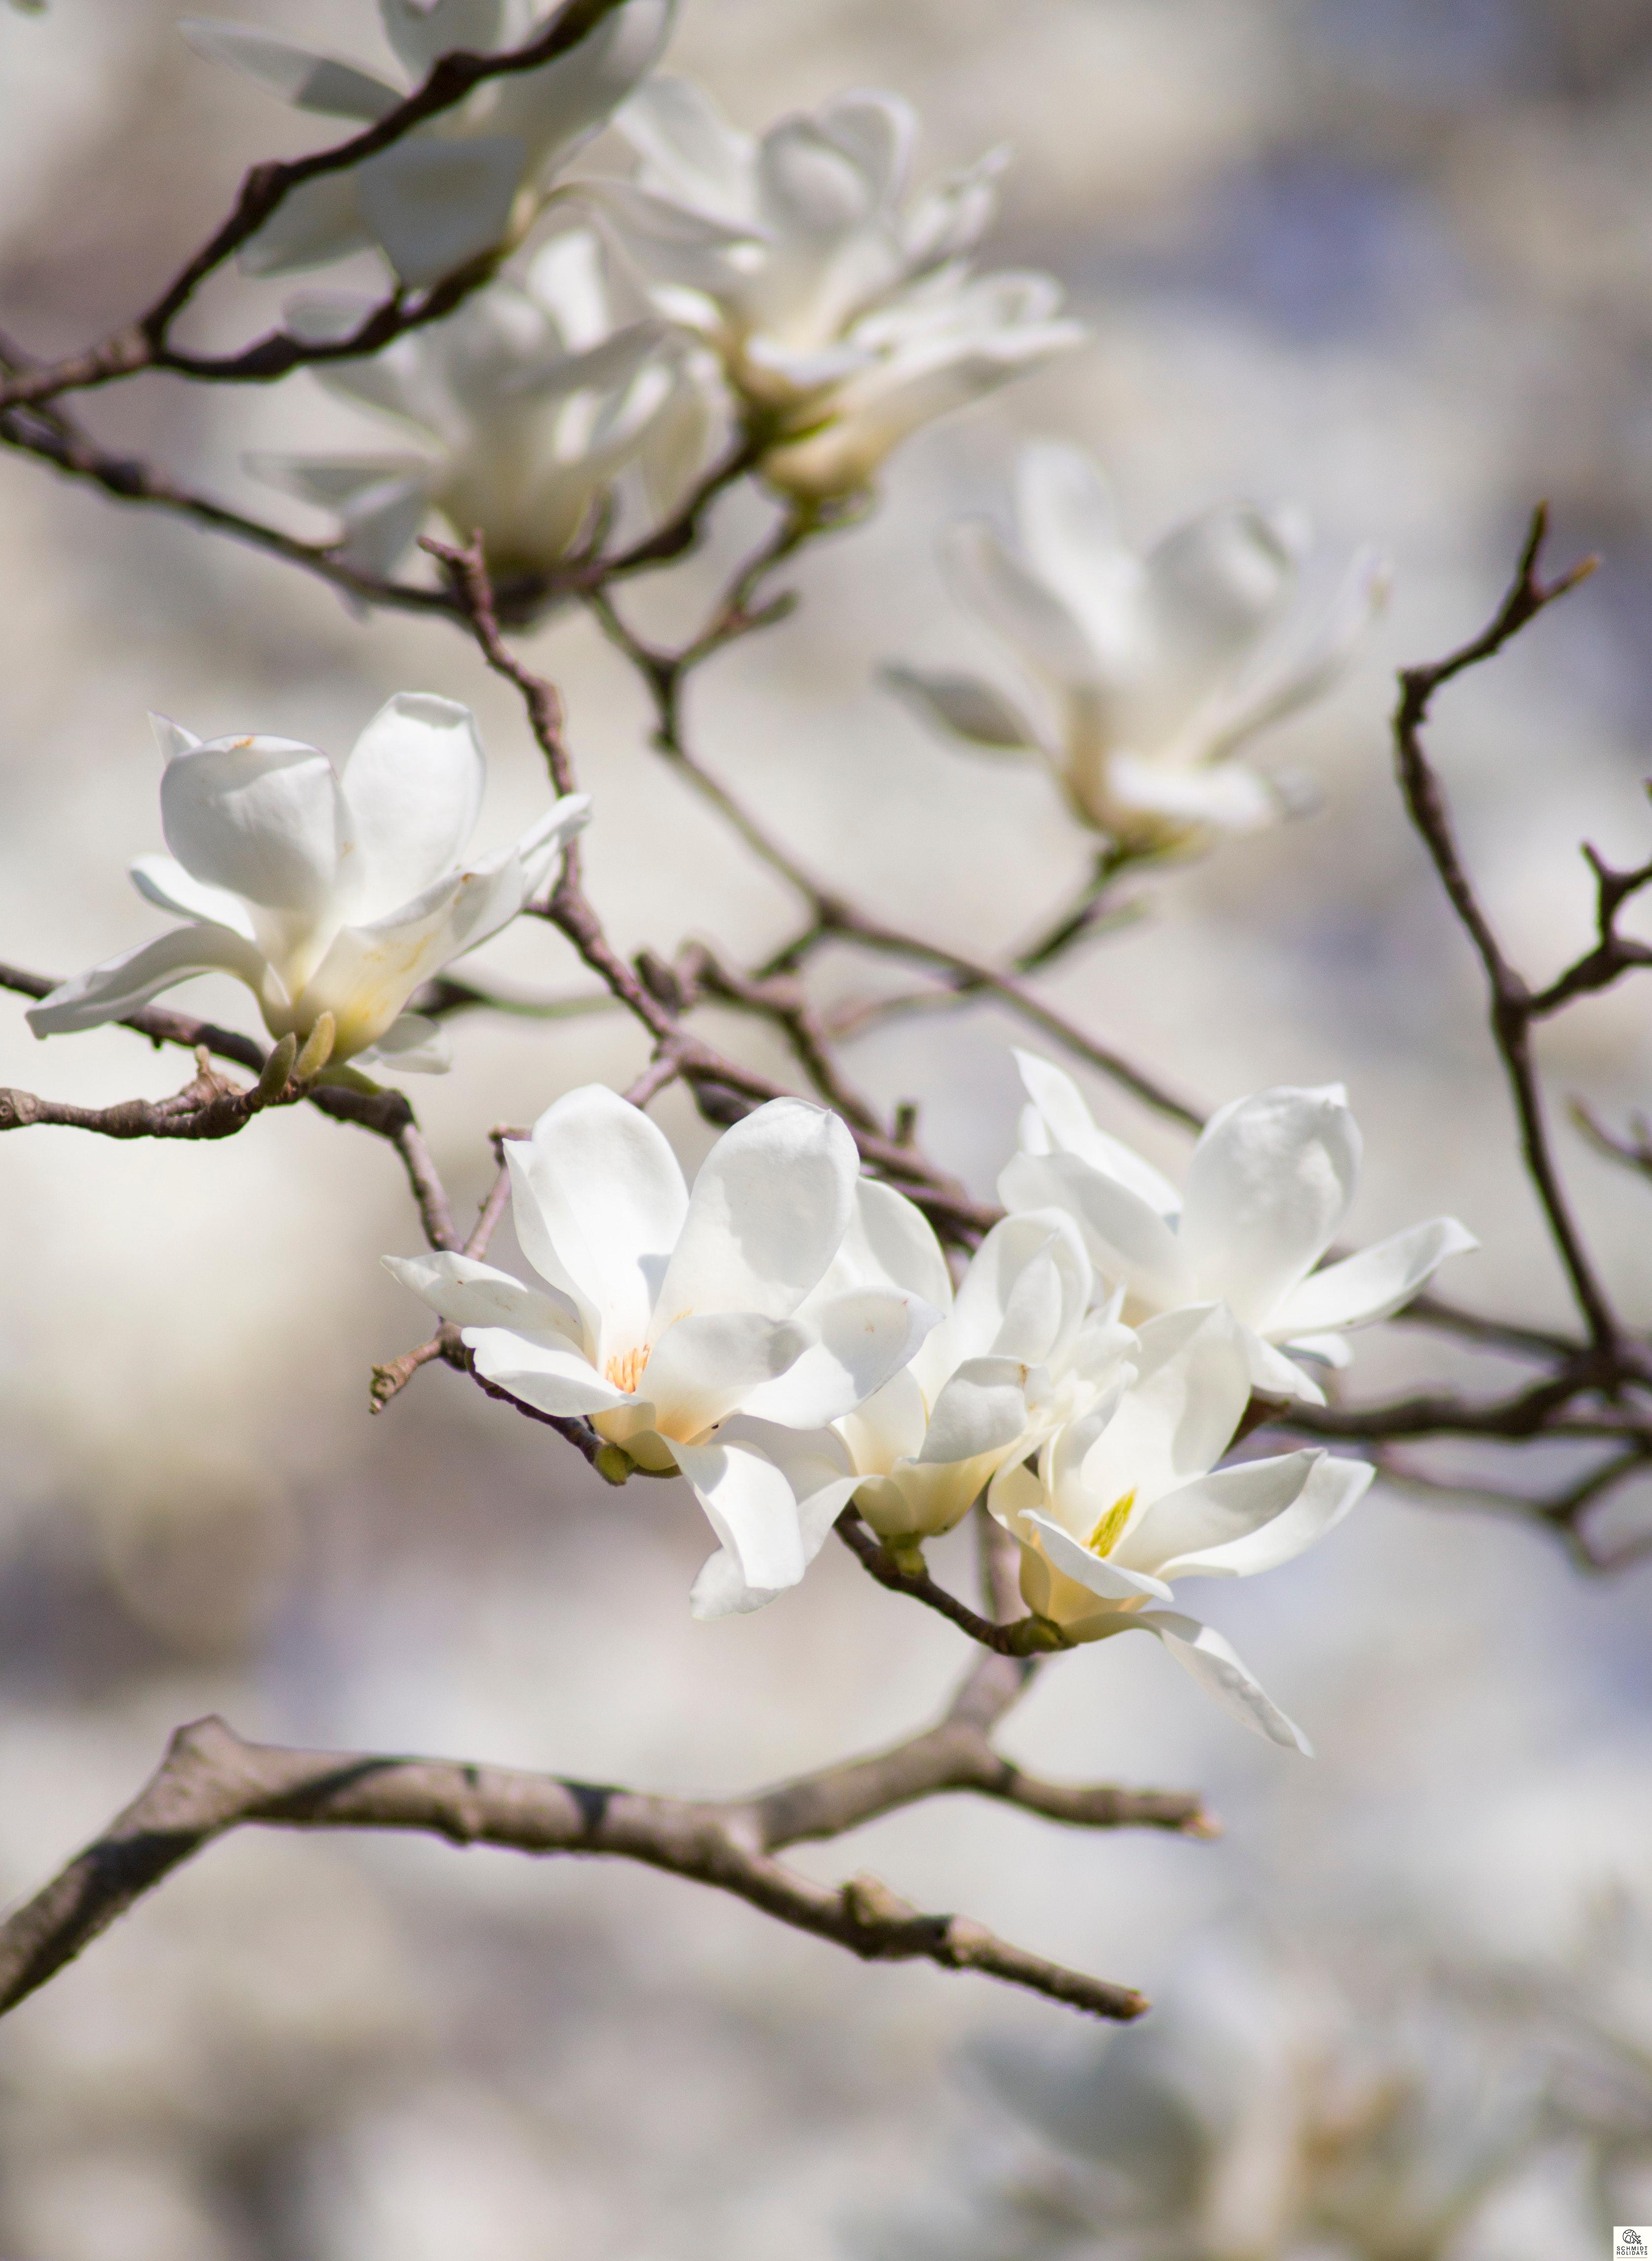 magnolia tourist attractions